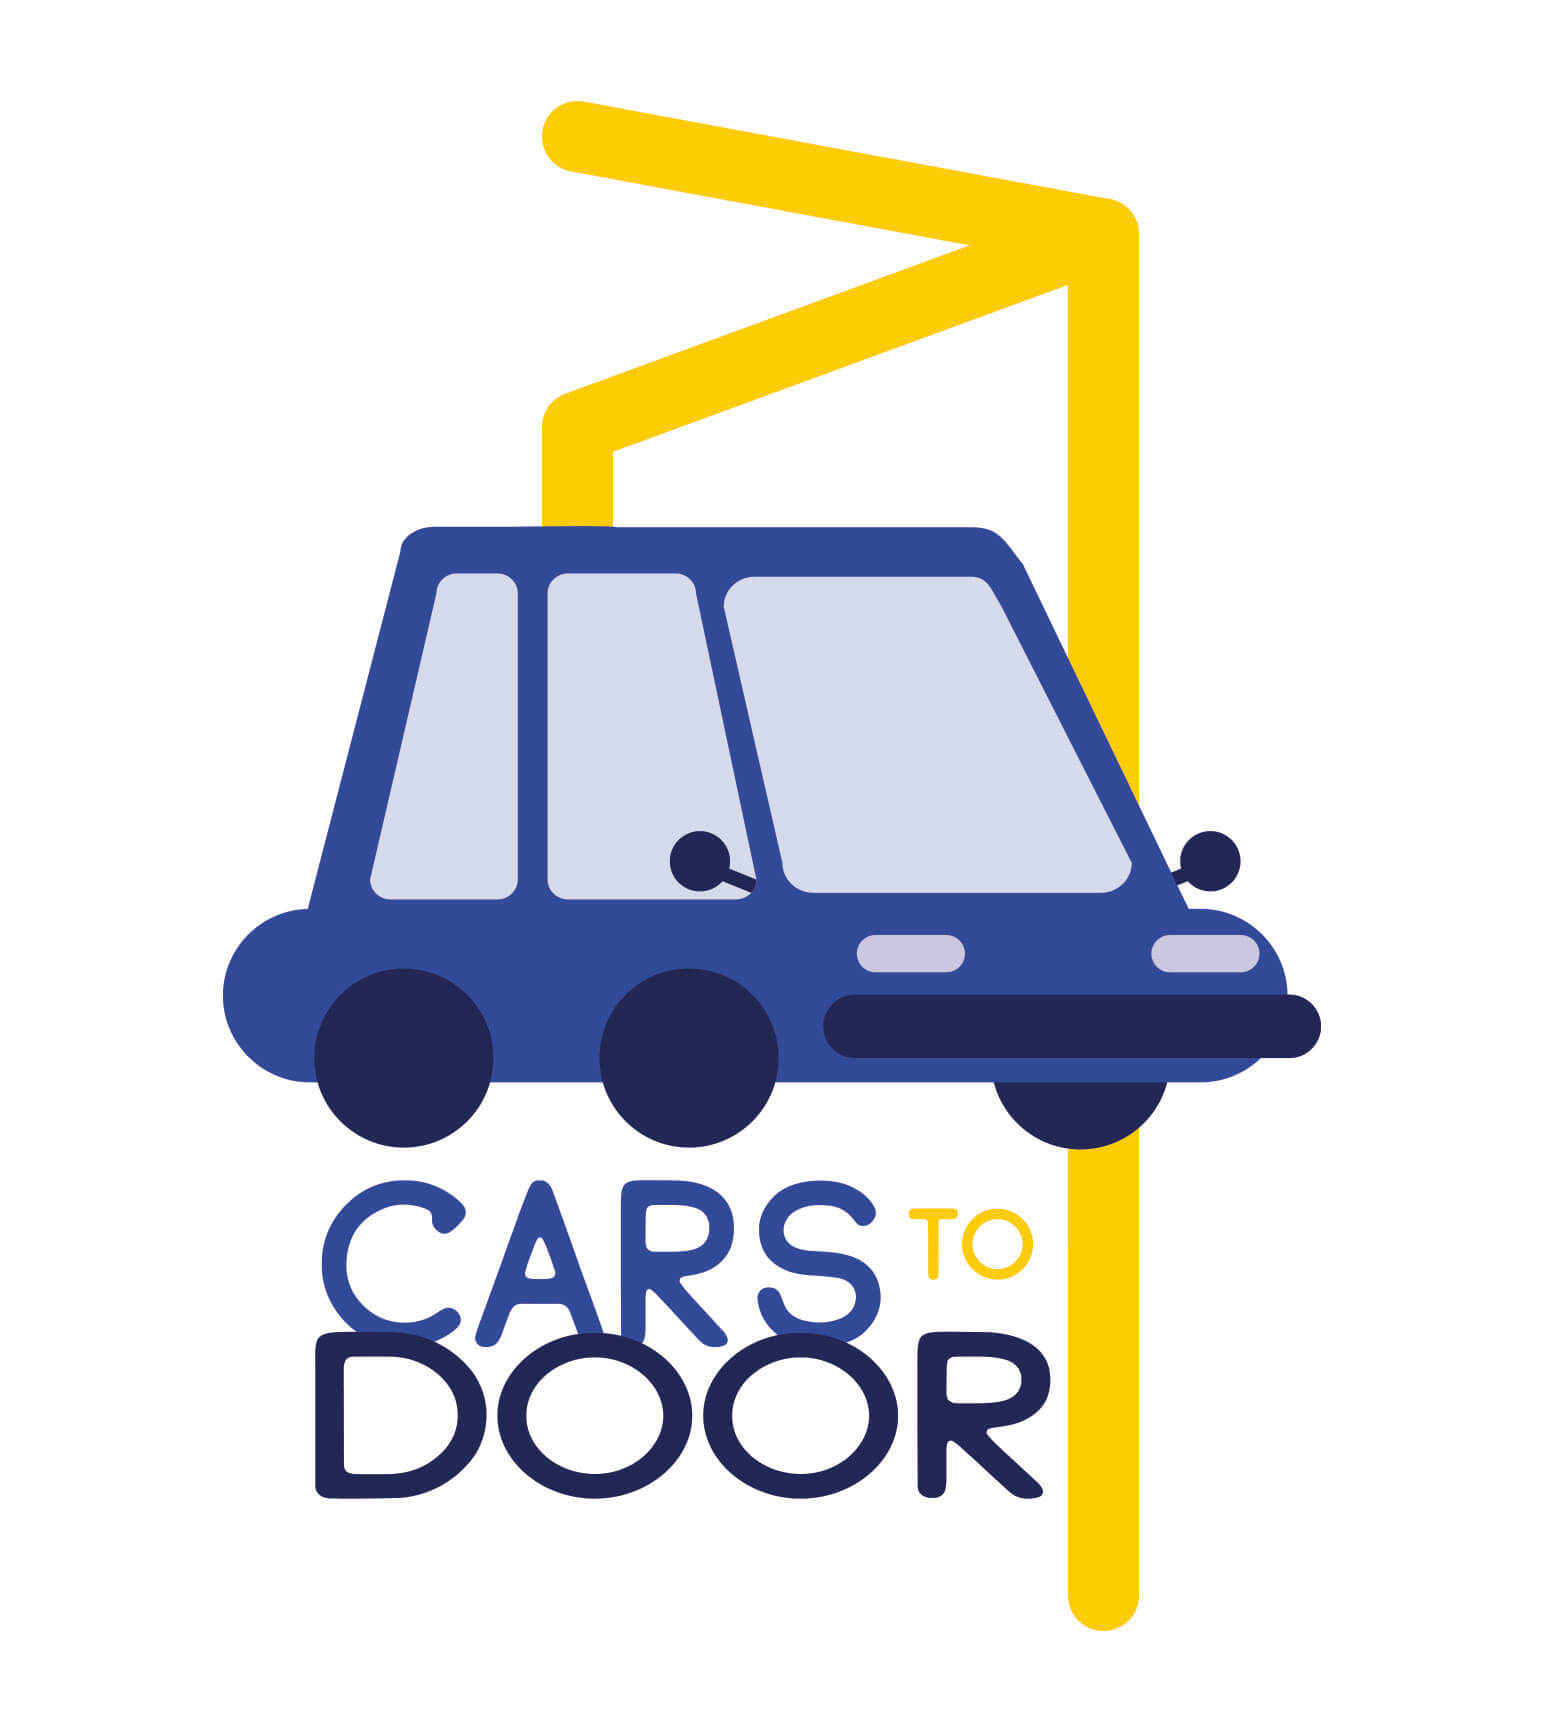 Cars to door